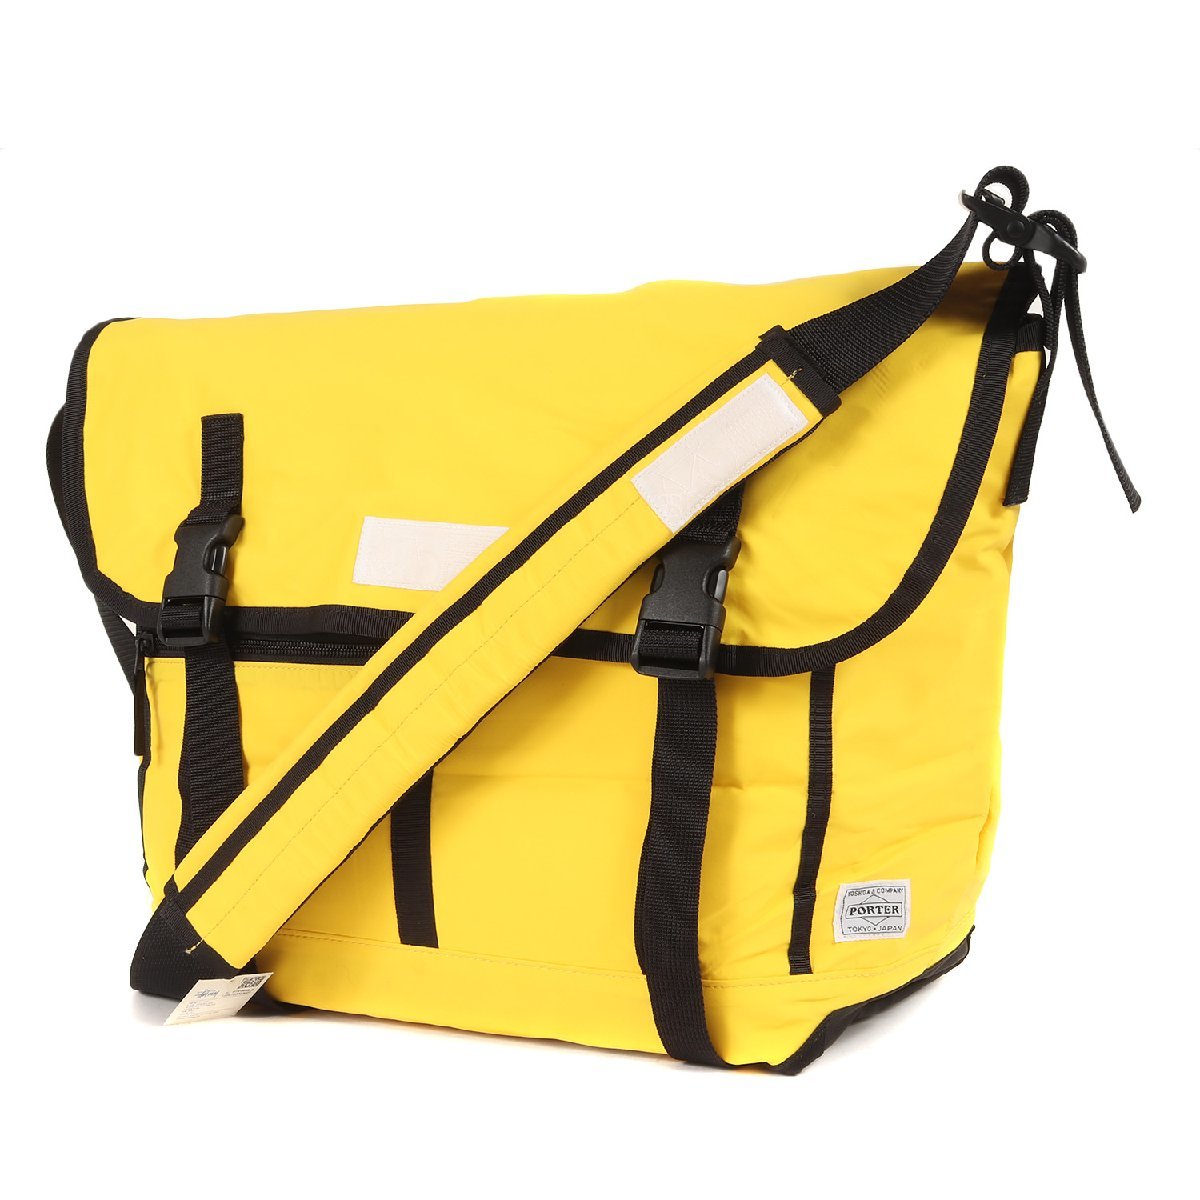  новый товар STUSSY Stussy сумка PORTER Porter специальный заказ сумка "почтальонка" желтый Yoshida bag сотрудничество бренд casual 